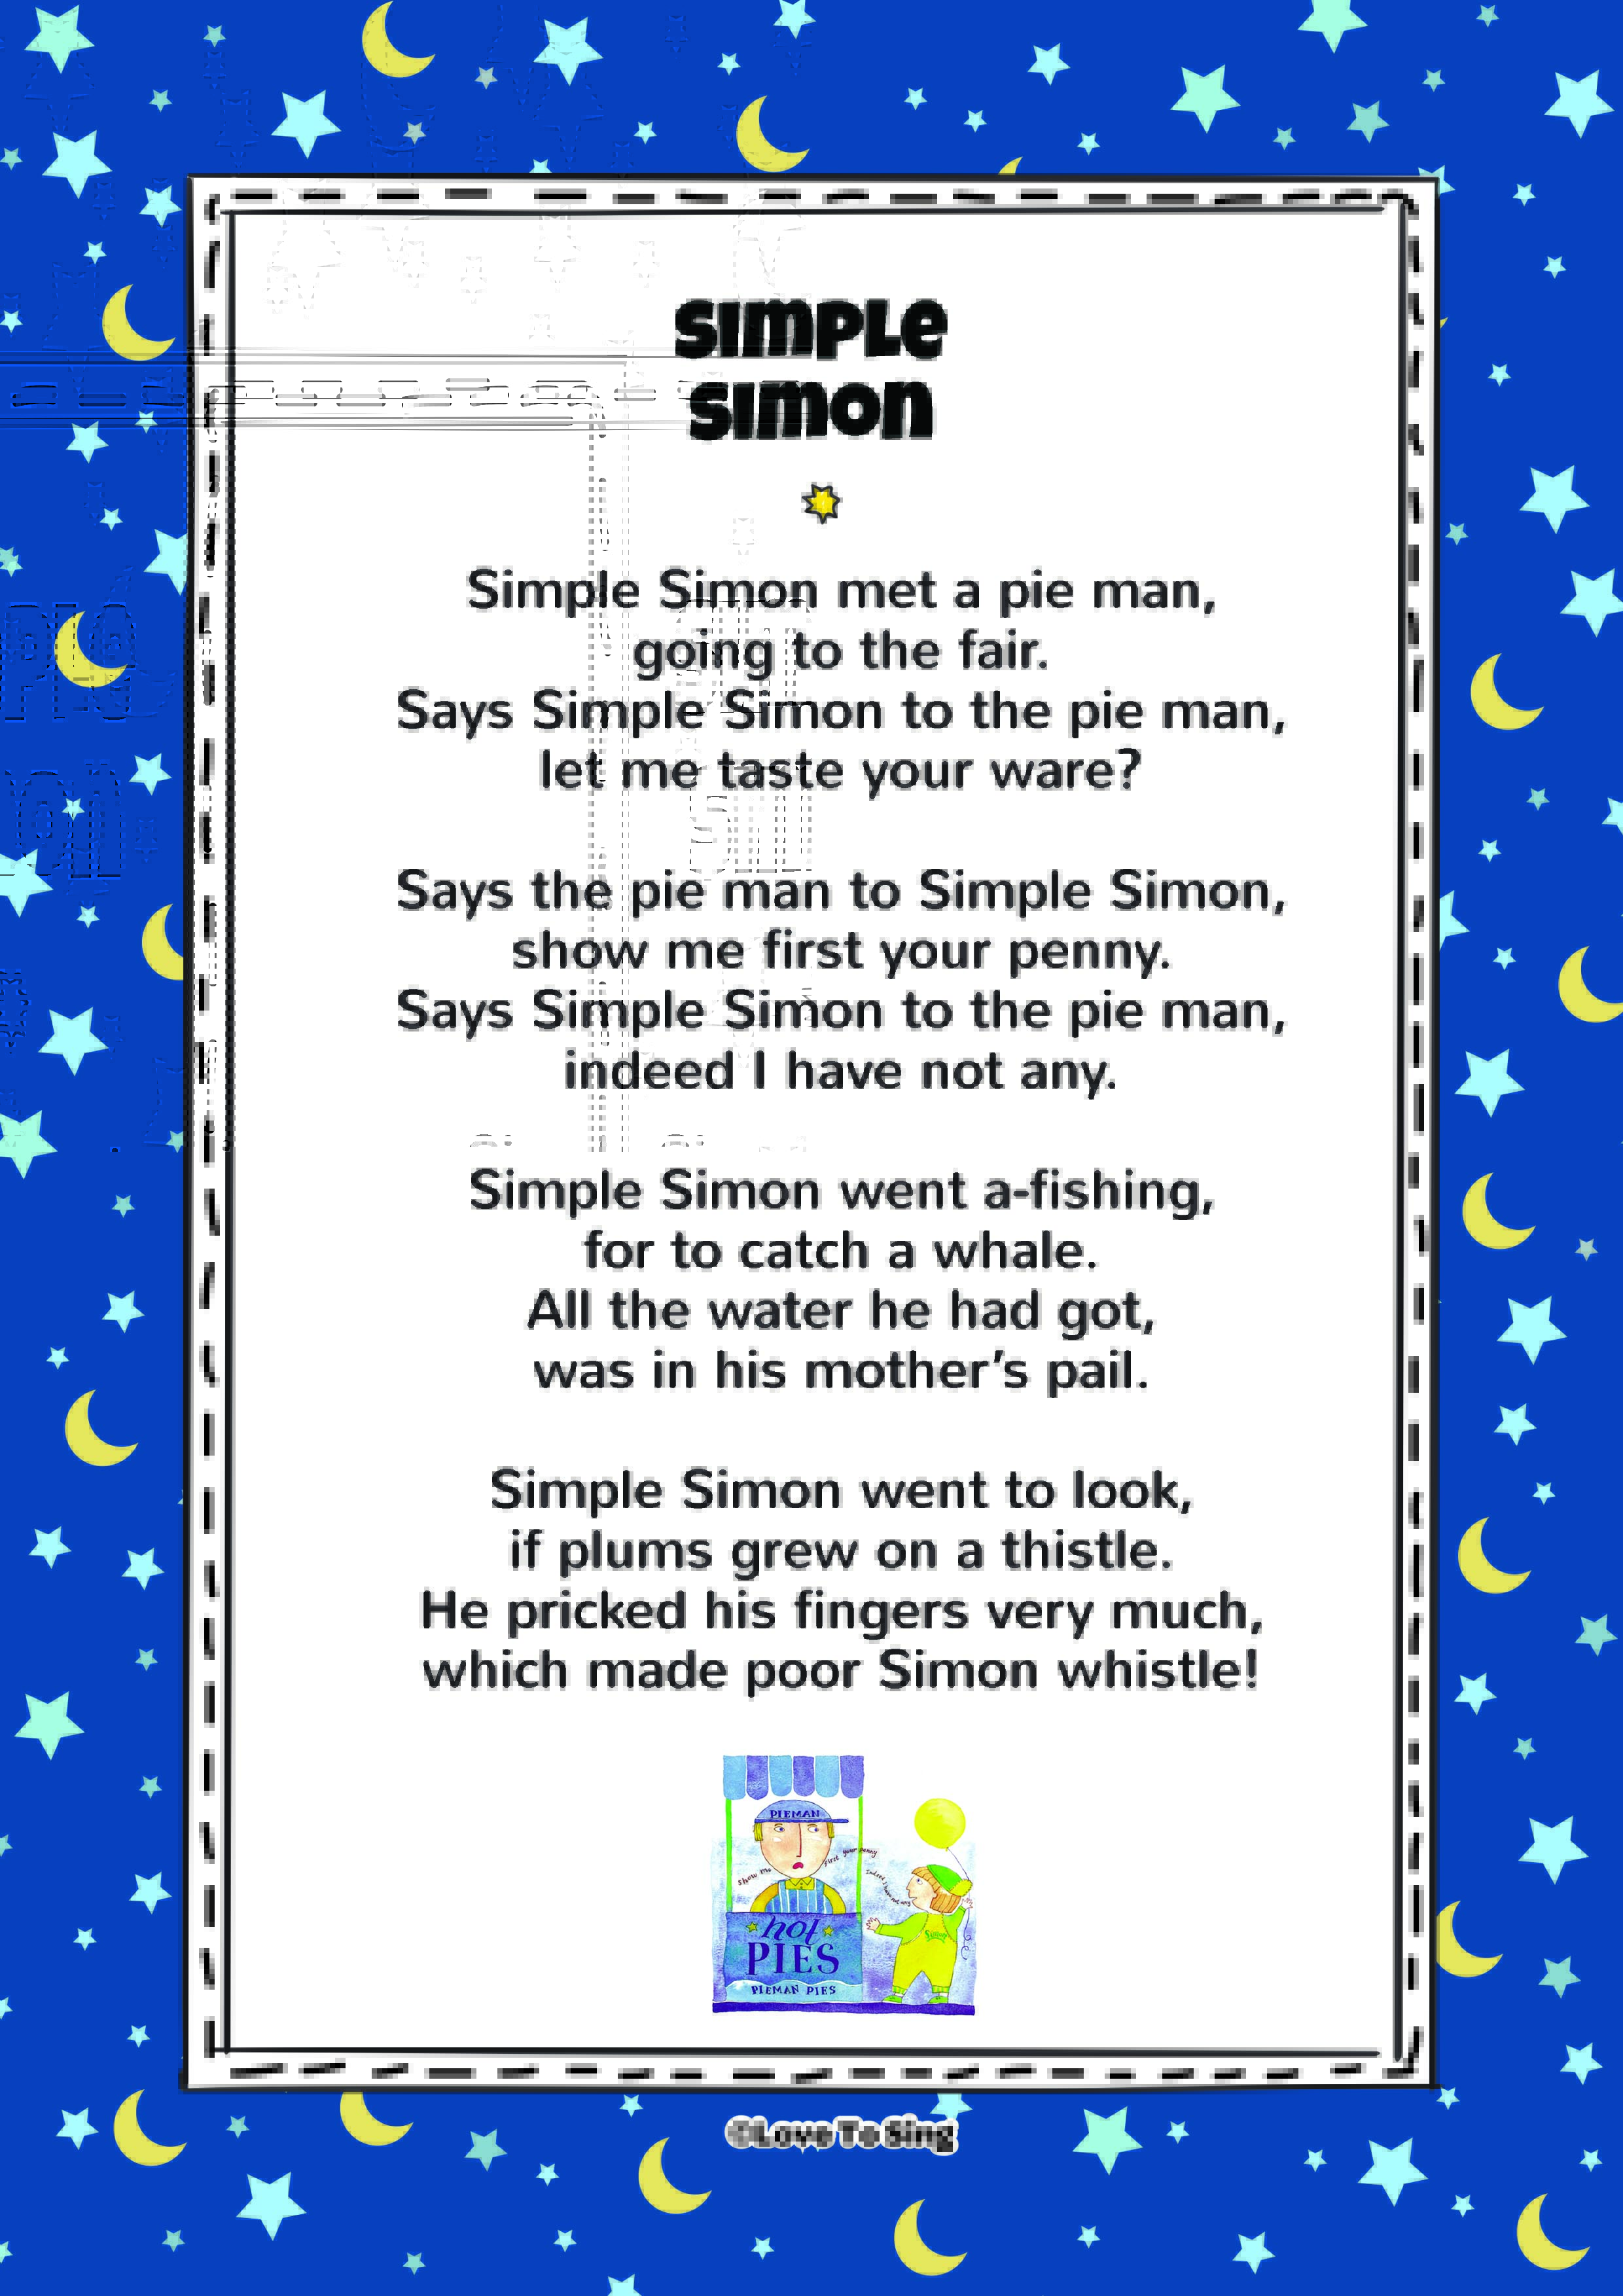 simon says song for children